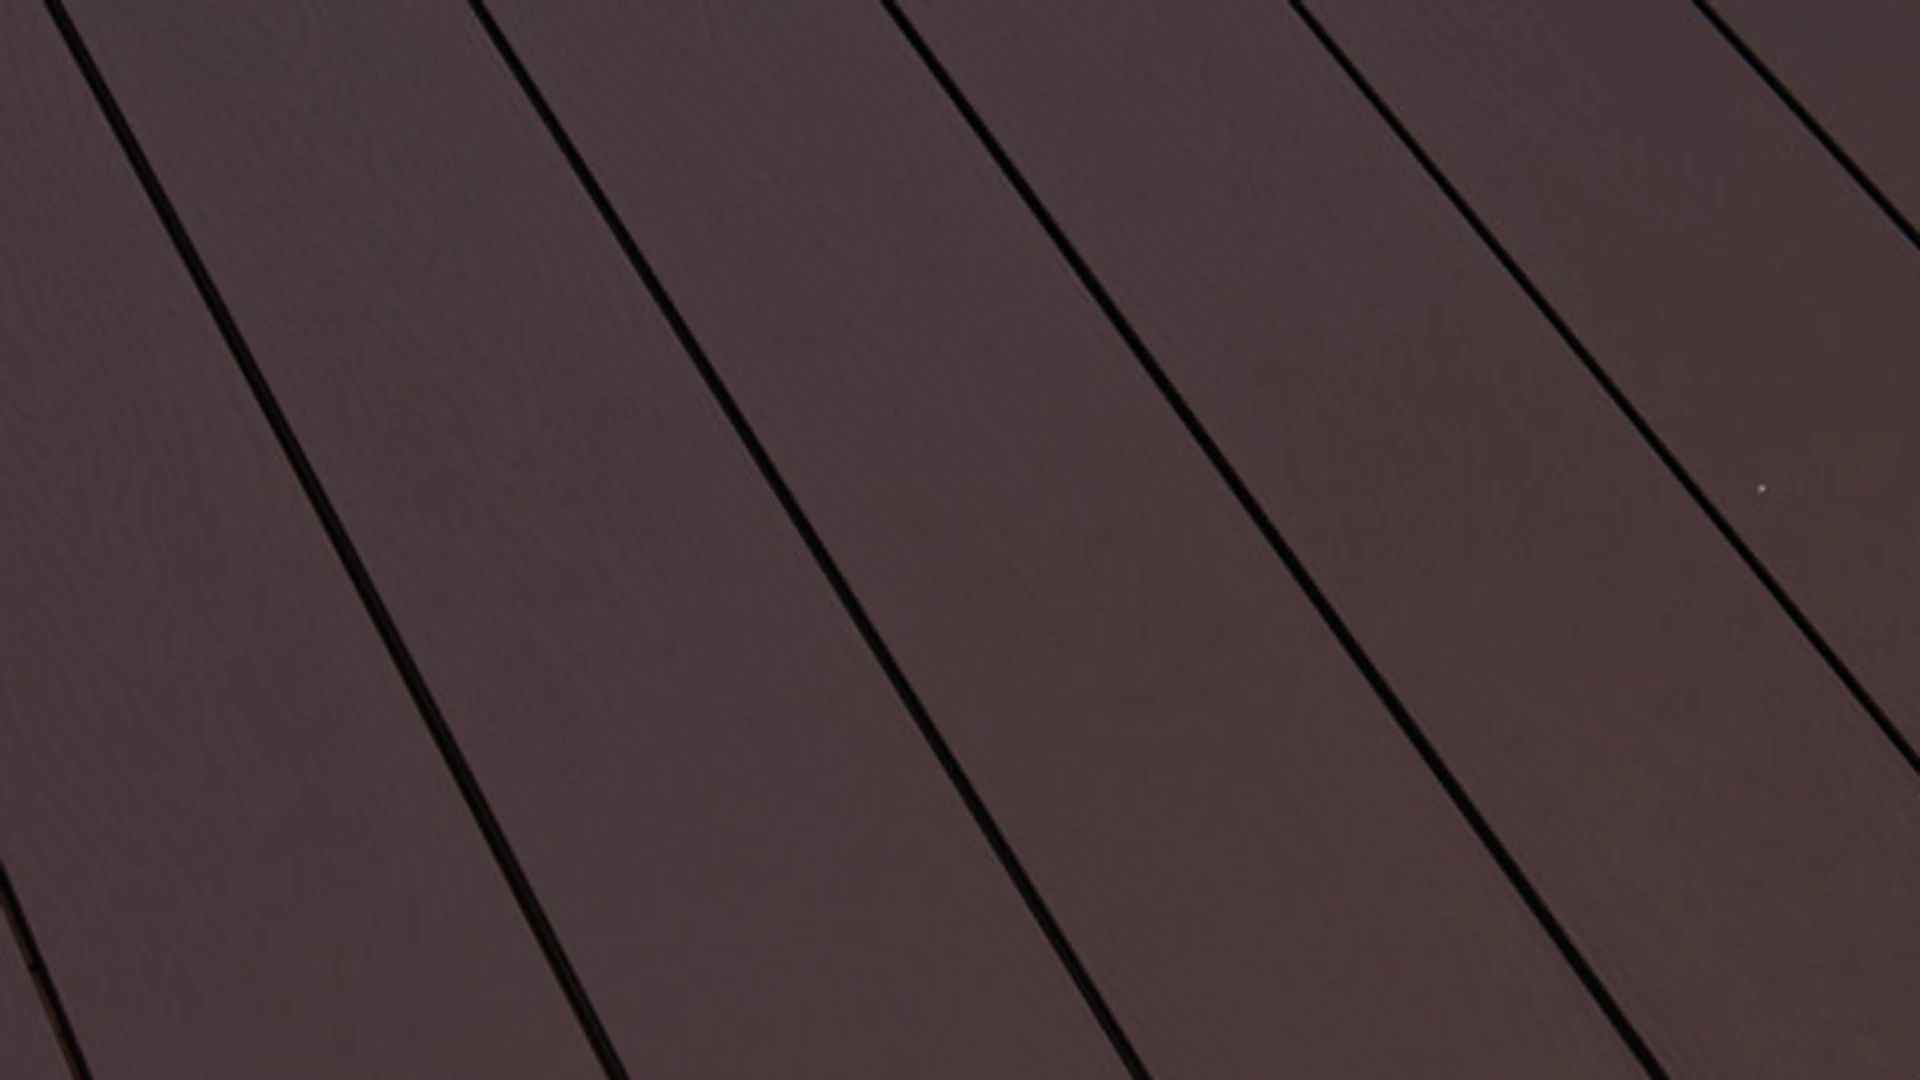 planeo terrasse composite - lame massive brun chocolat gaufré/strié - 1m à 6m